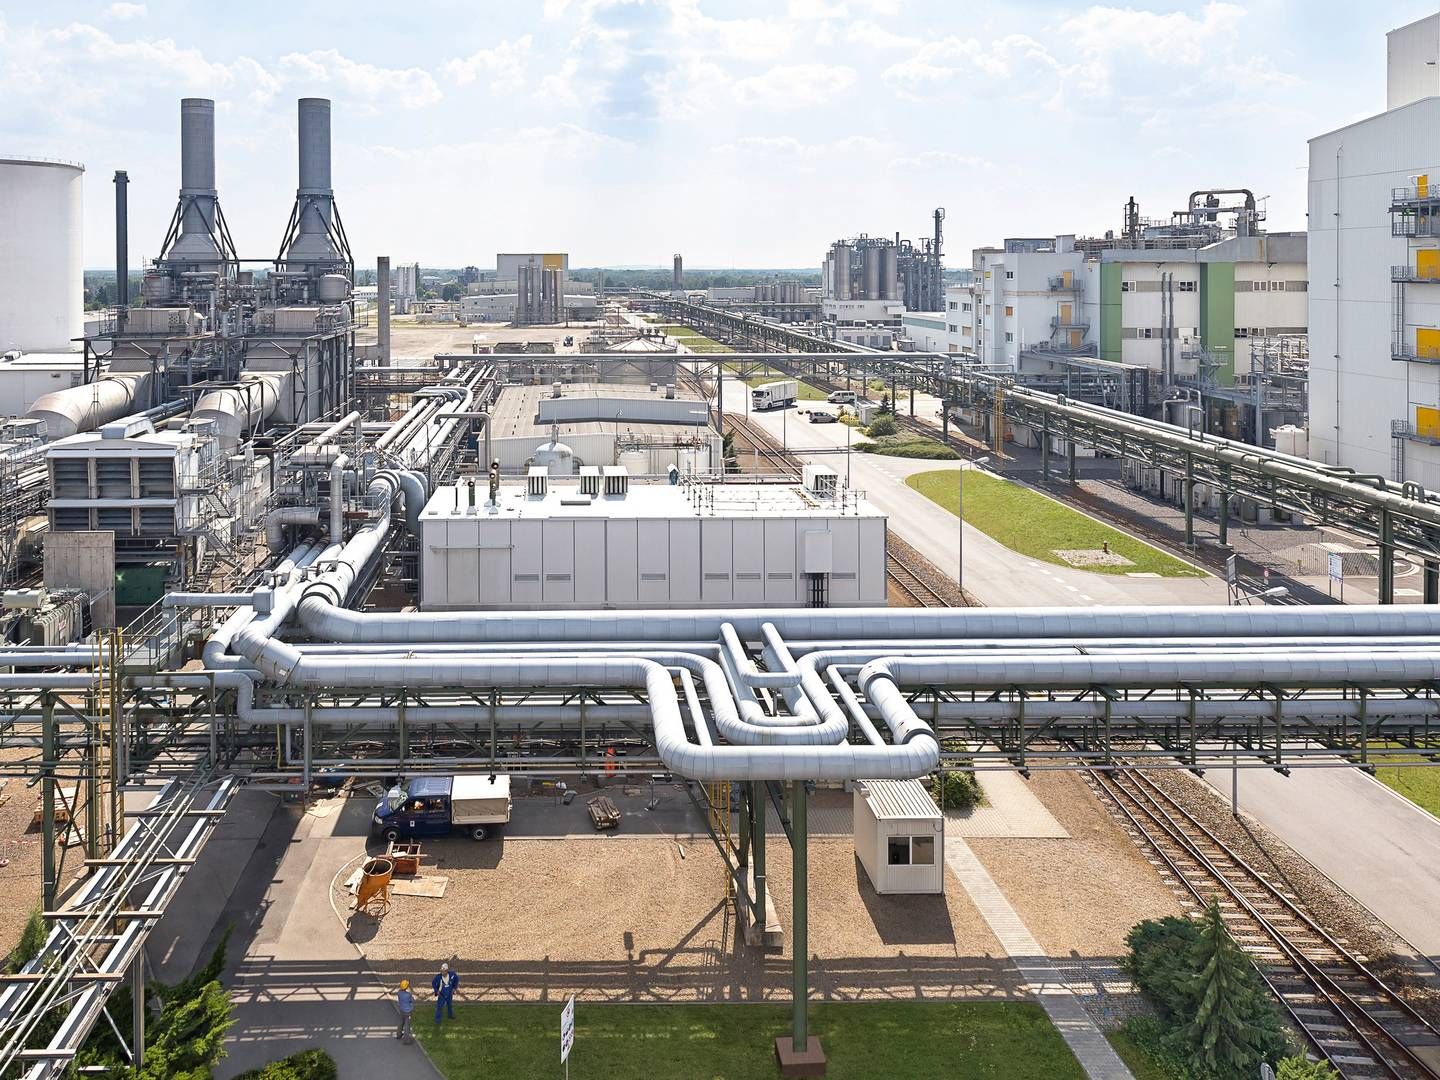 Anlægget i Schwarzheide, hvor der skal bygges en katodefabrik frem mod 2022. | Foto: PR / BASF/www.basf-schwarzheide.de